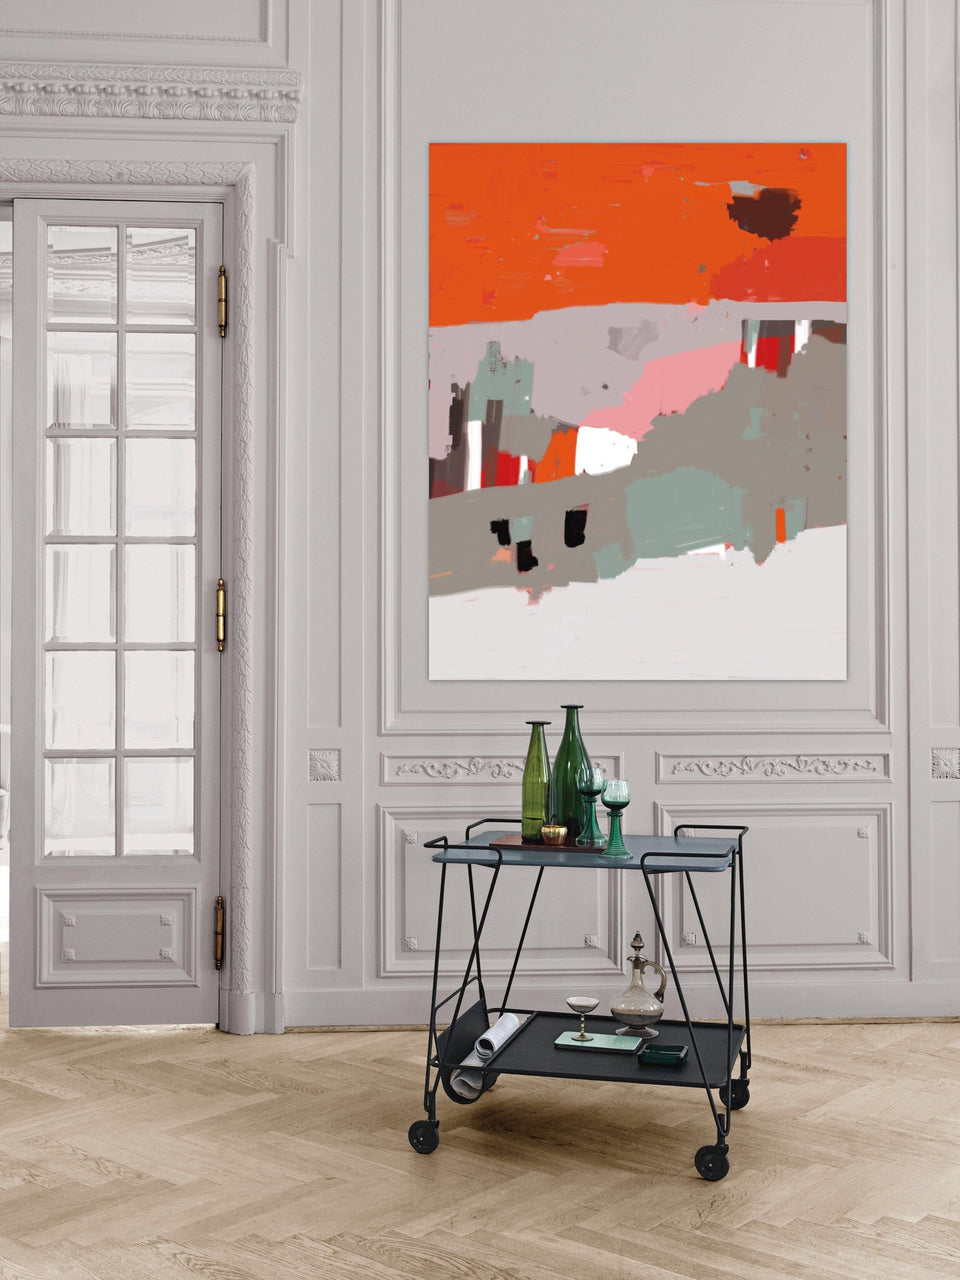  Paysage abstrait coloré orange gris ocre - Œuvres d'art  artiste peintre Octave Pixel  galerie TACT Art abstrait & contemporain